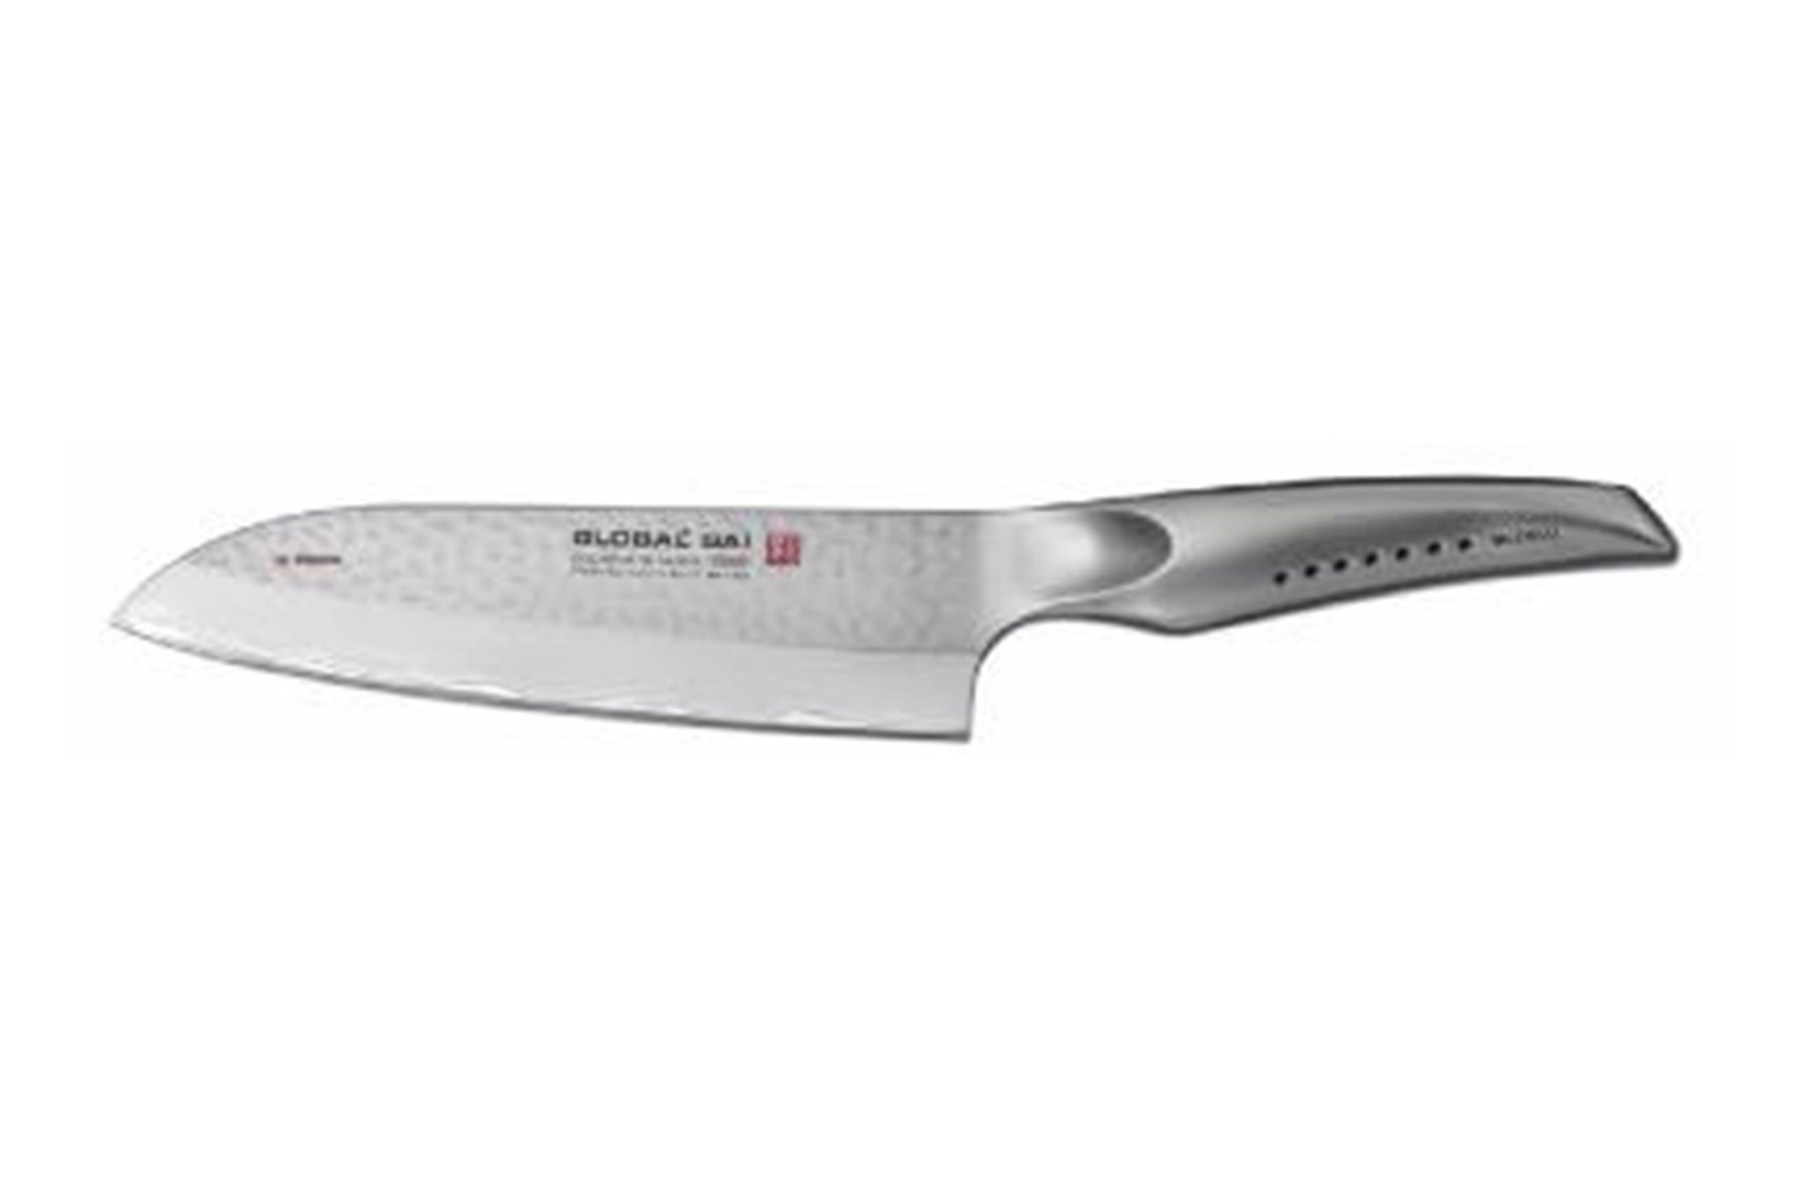 Couteau japonais Global Sai - Santoku 19 cm